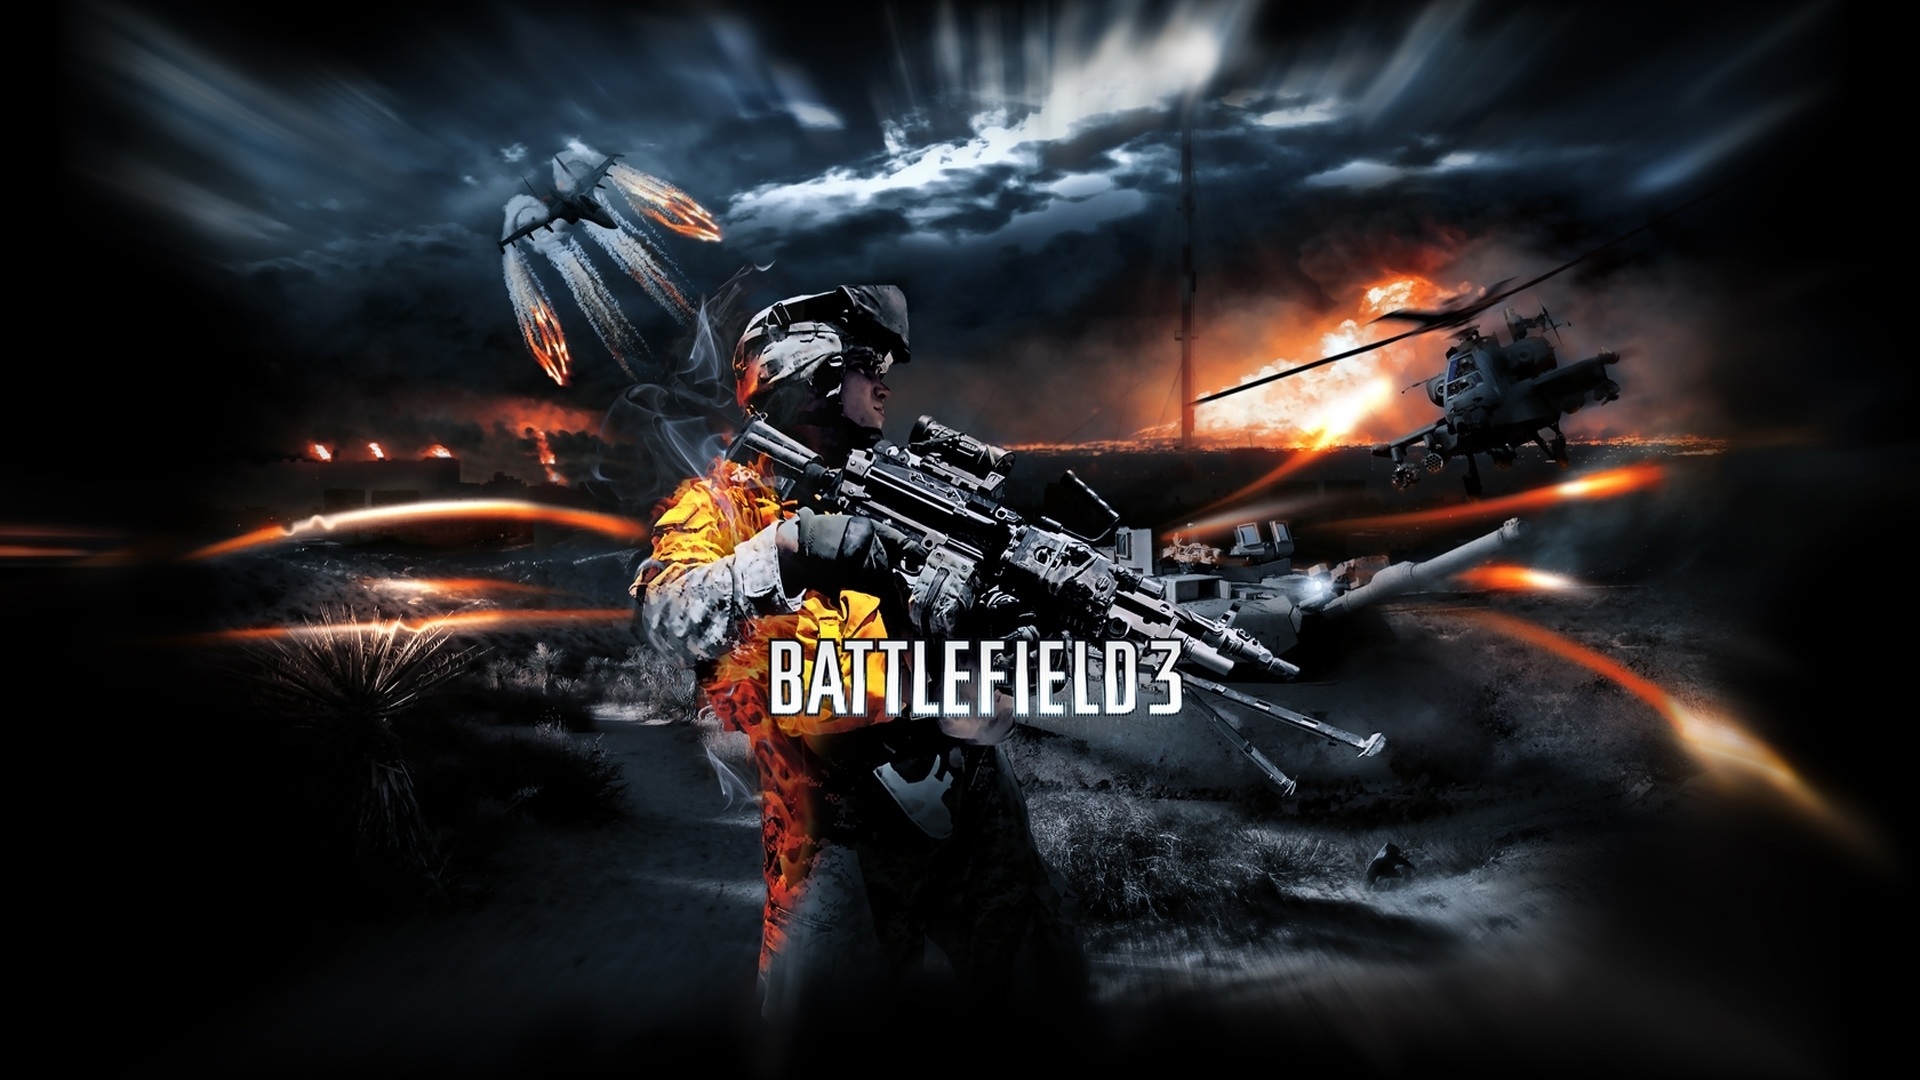 Wallpaper Battlefield 3 Game Hd - Battlefield 3 Wallpaper 1080p , HD Wallpaper & Backgrounds